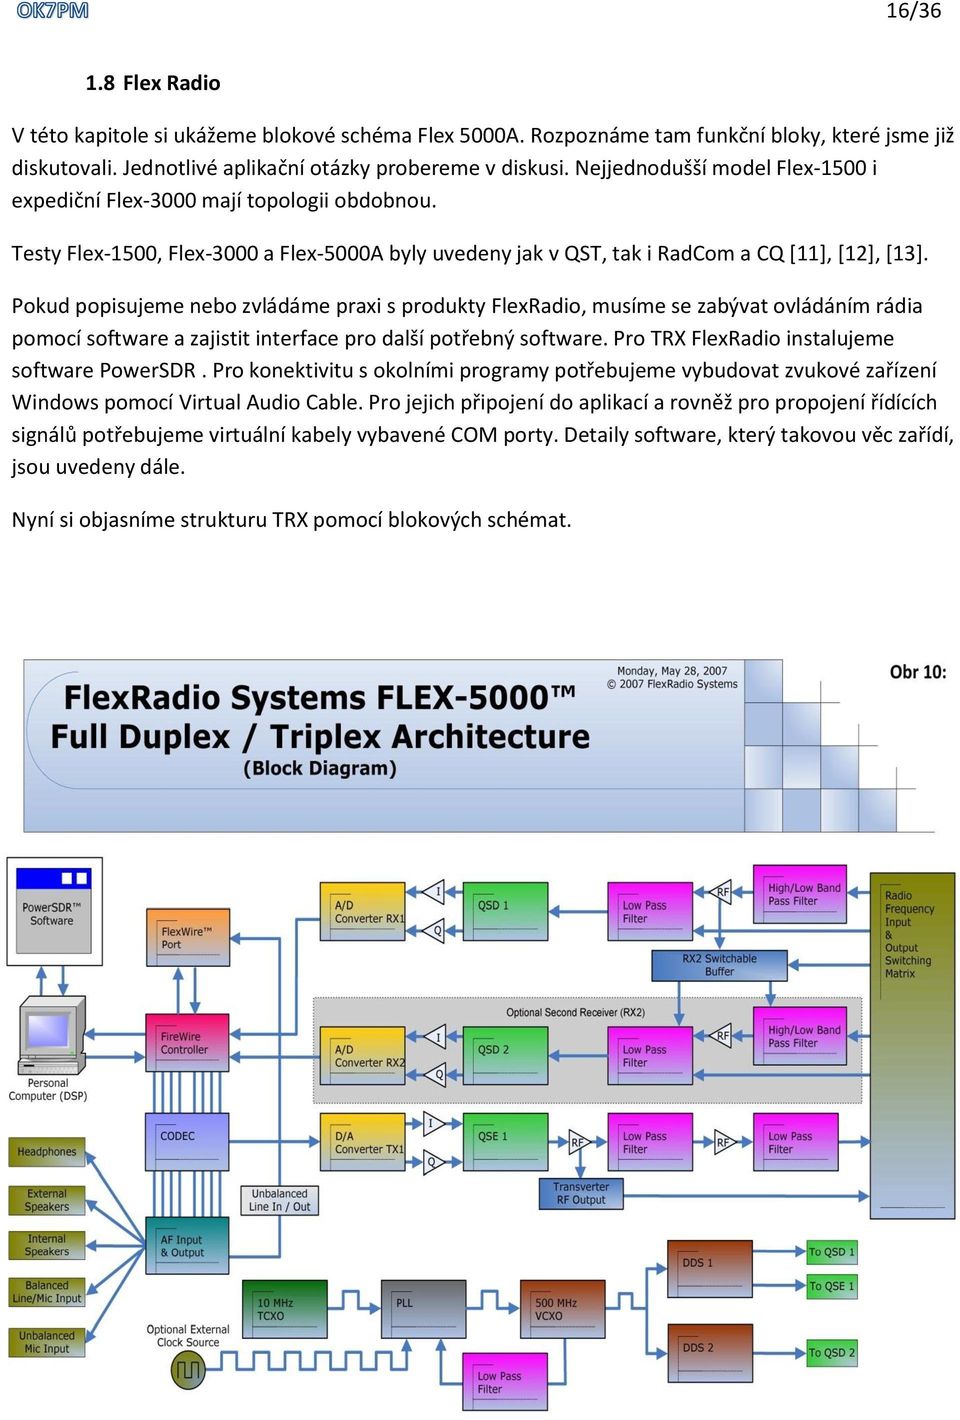 Pokud popisujeme nebo zvládáme praxi s produkty FlexRadio, musíme se zabývat ovládáním rádia pomocí software a zajistit interface pro další potřebný software.